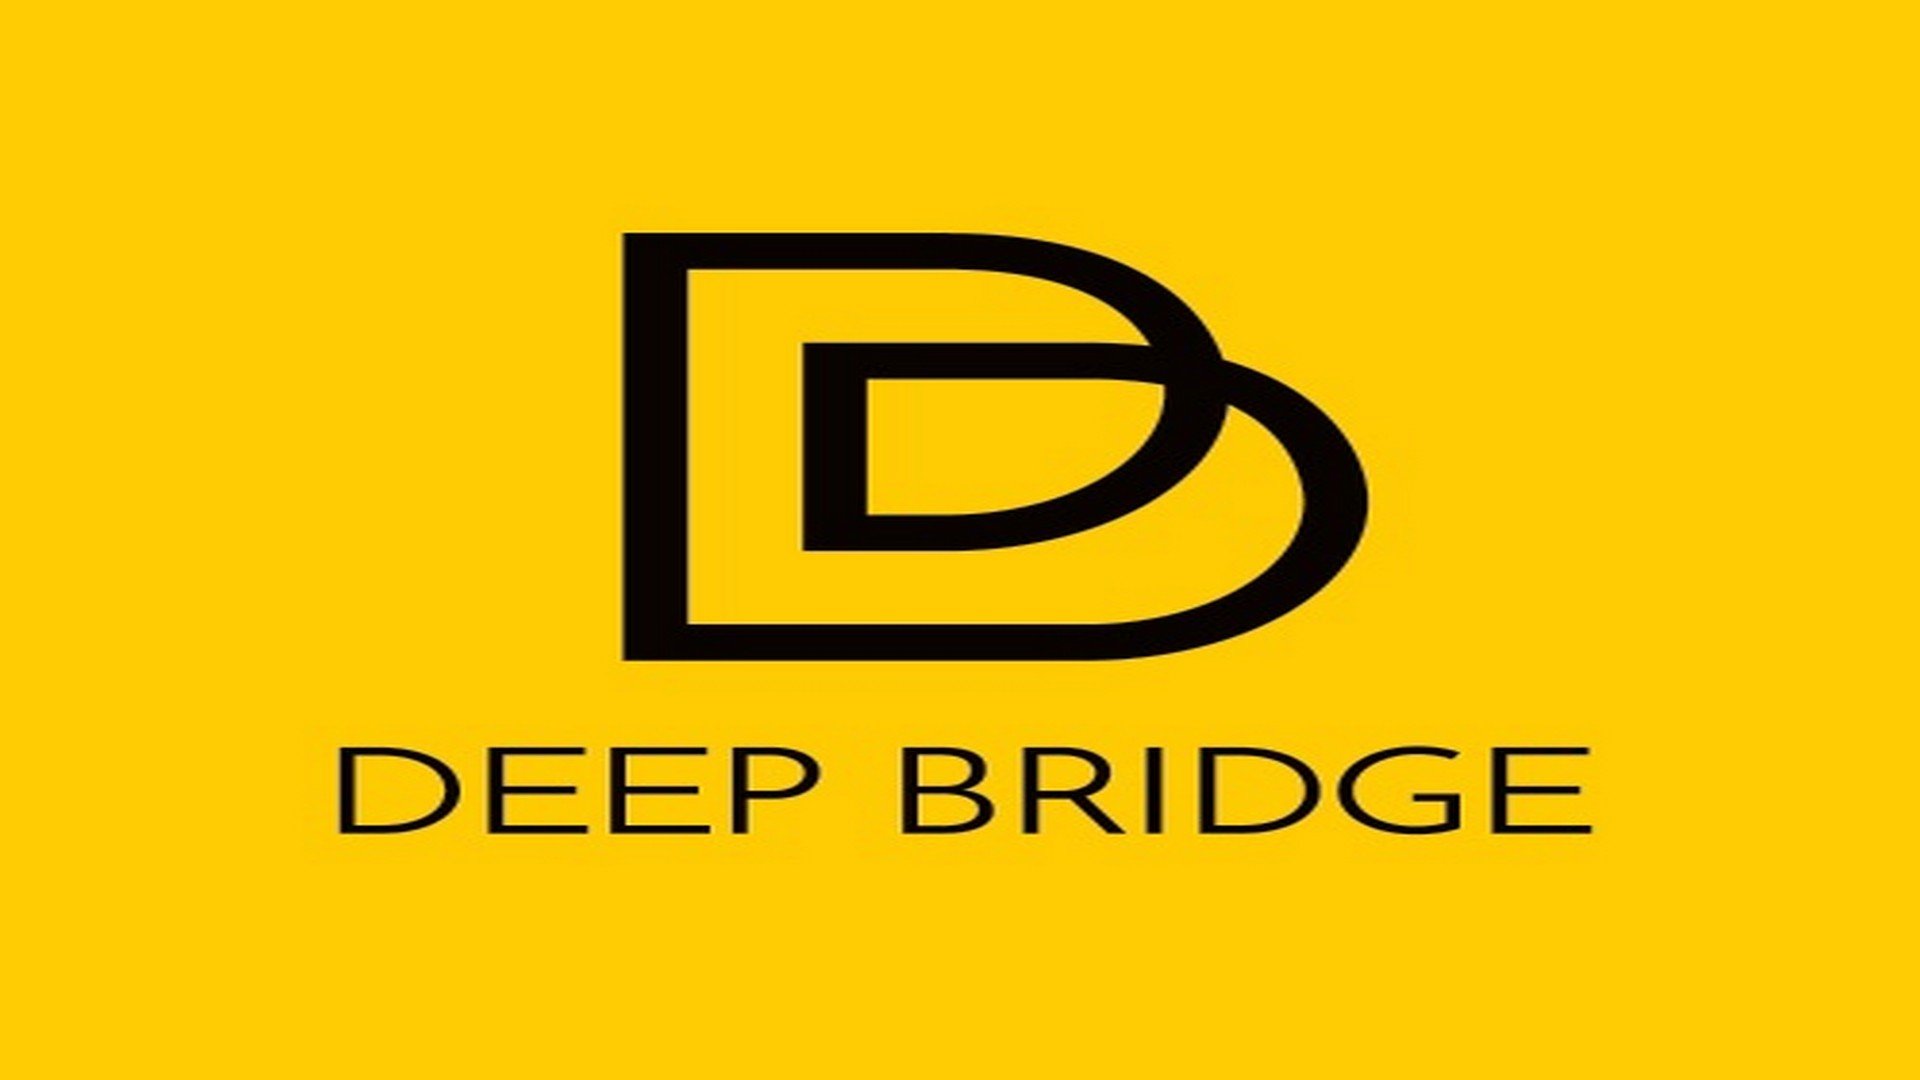 Deep Bridge was prominent aanwezig op de Antwerpse Cultuurmarkt - Logo deep bridge 1